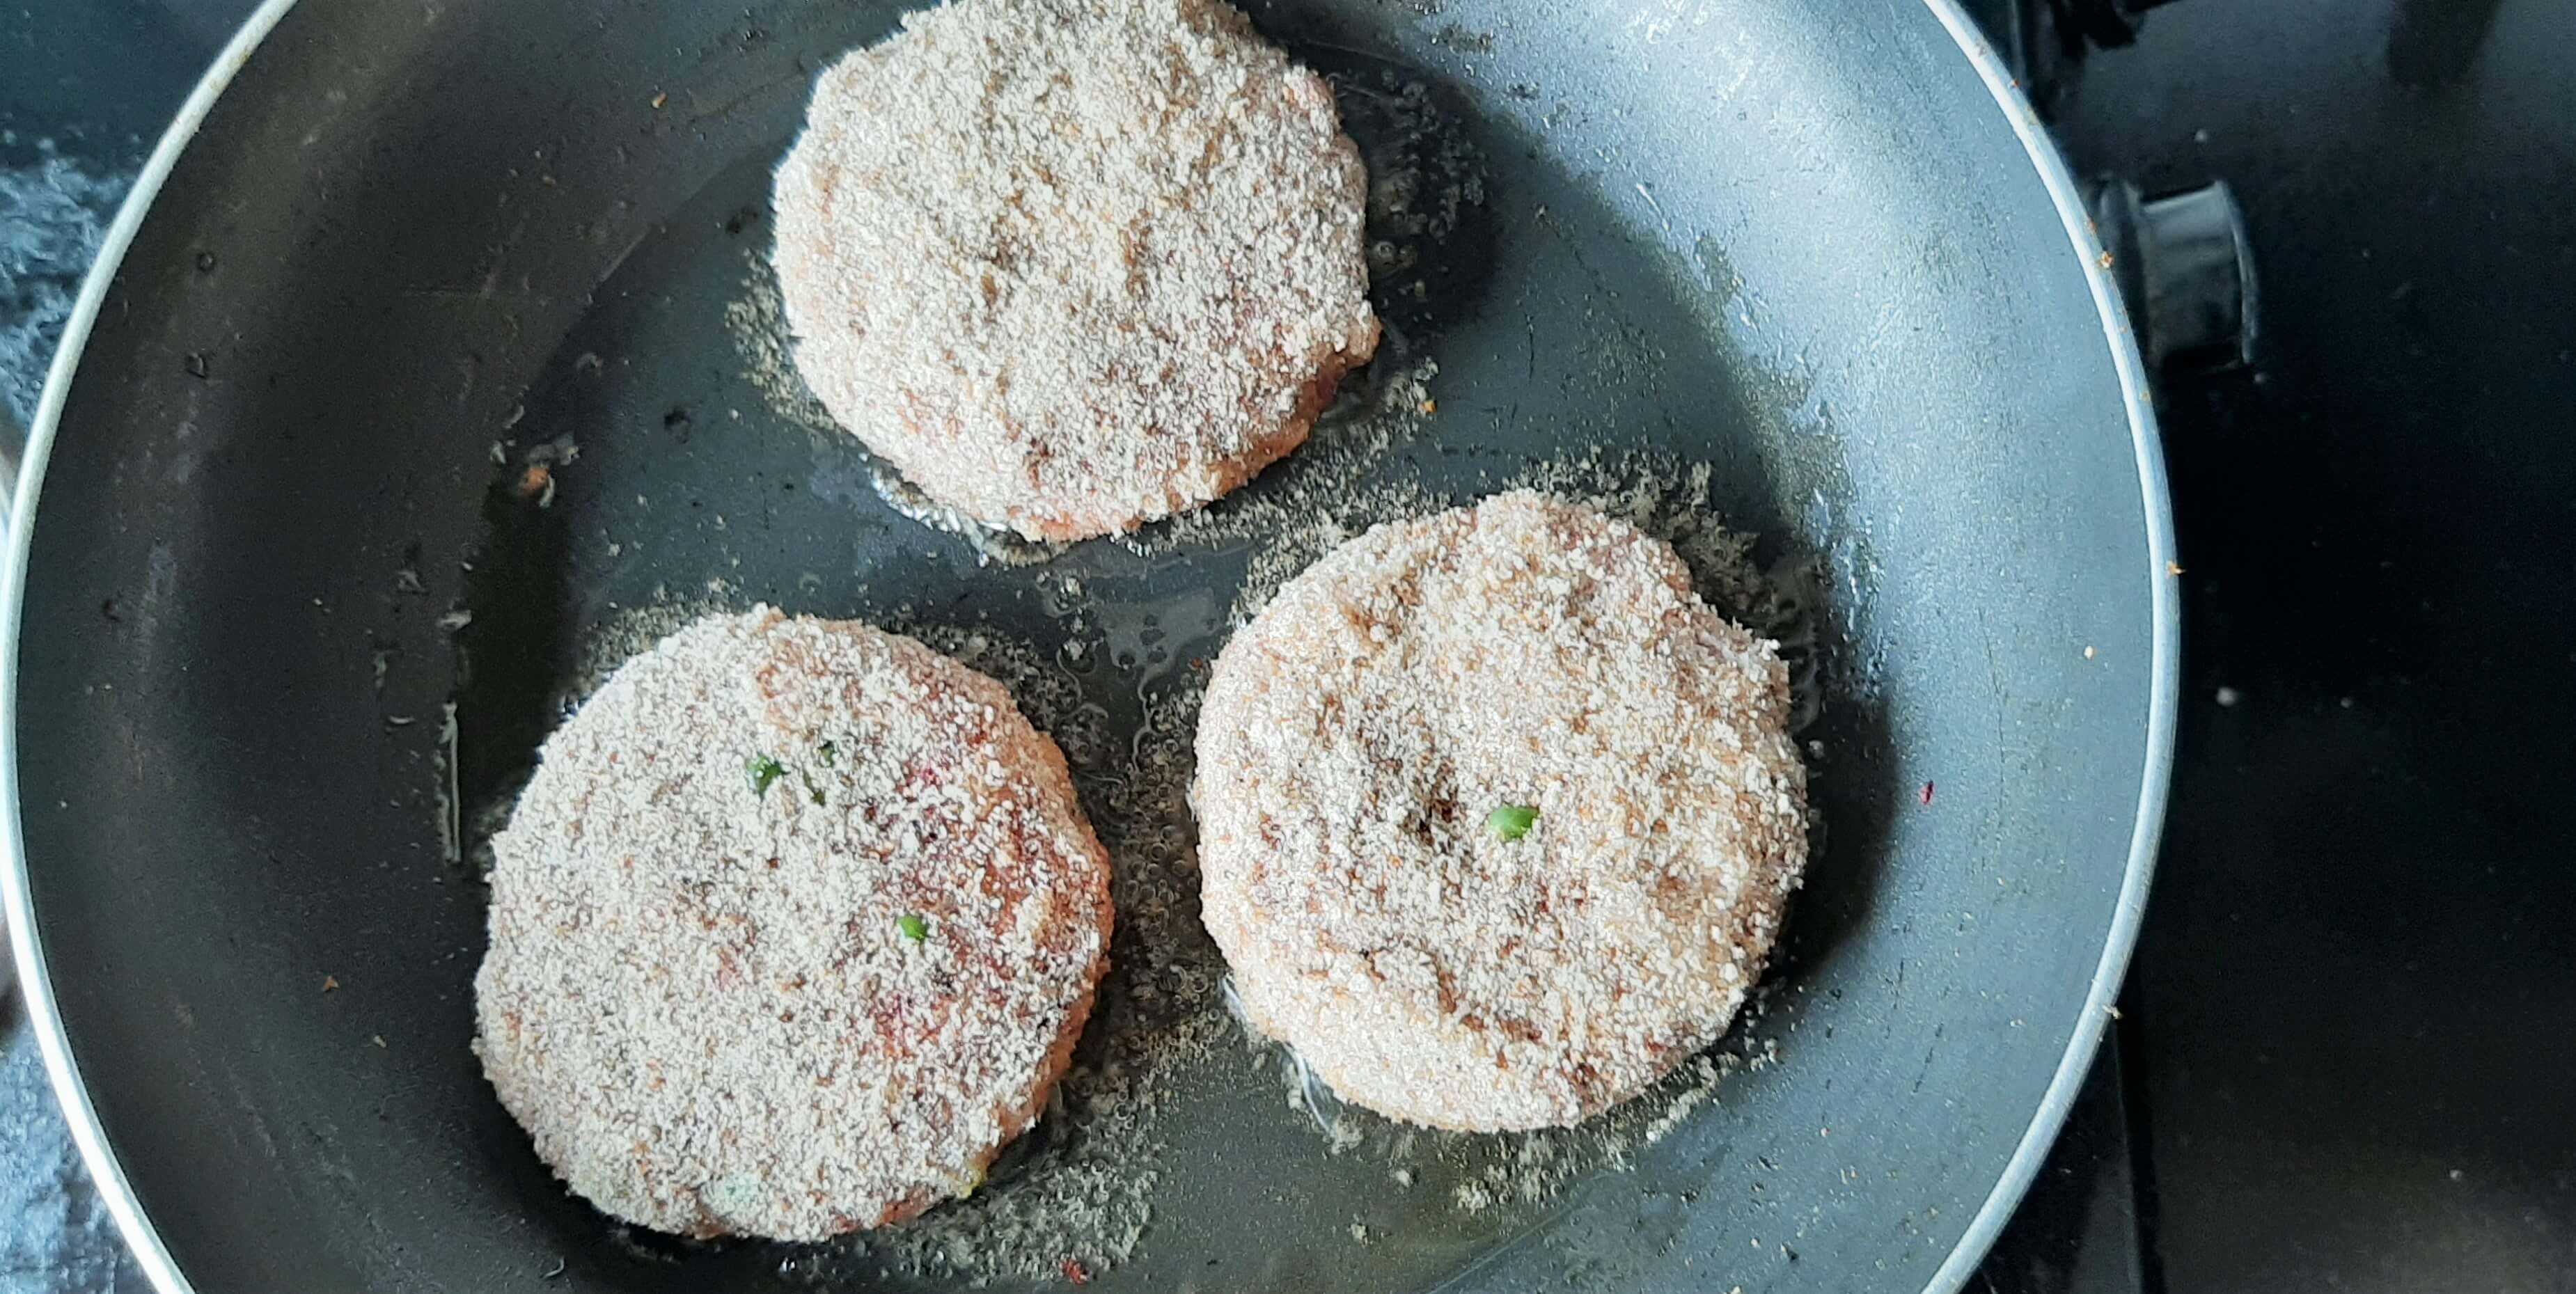 Frying veg cutlets in a pan